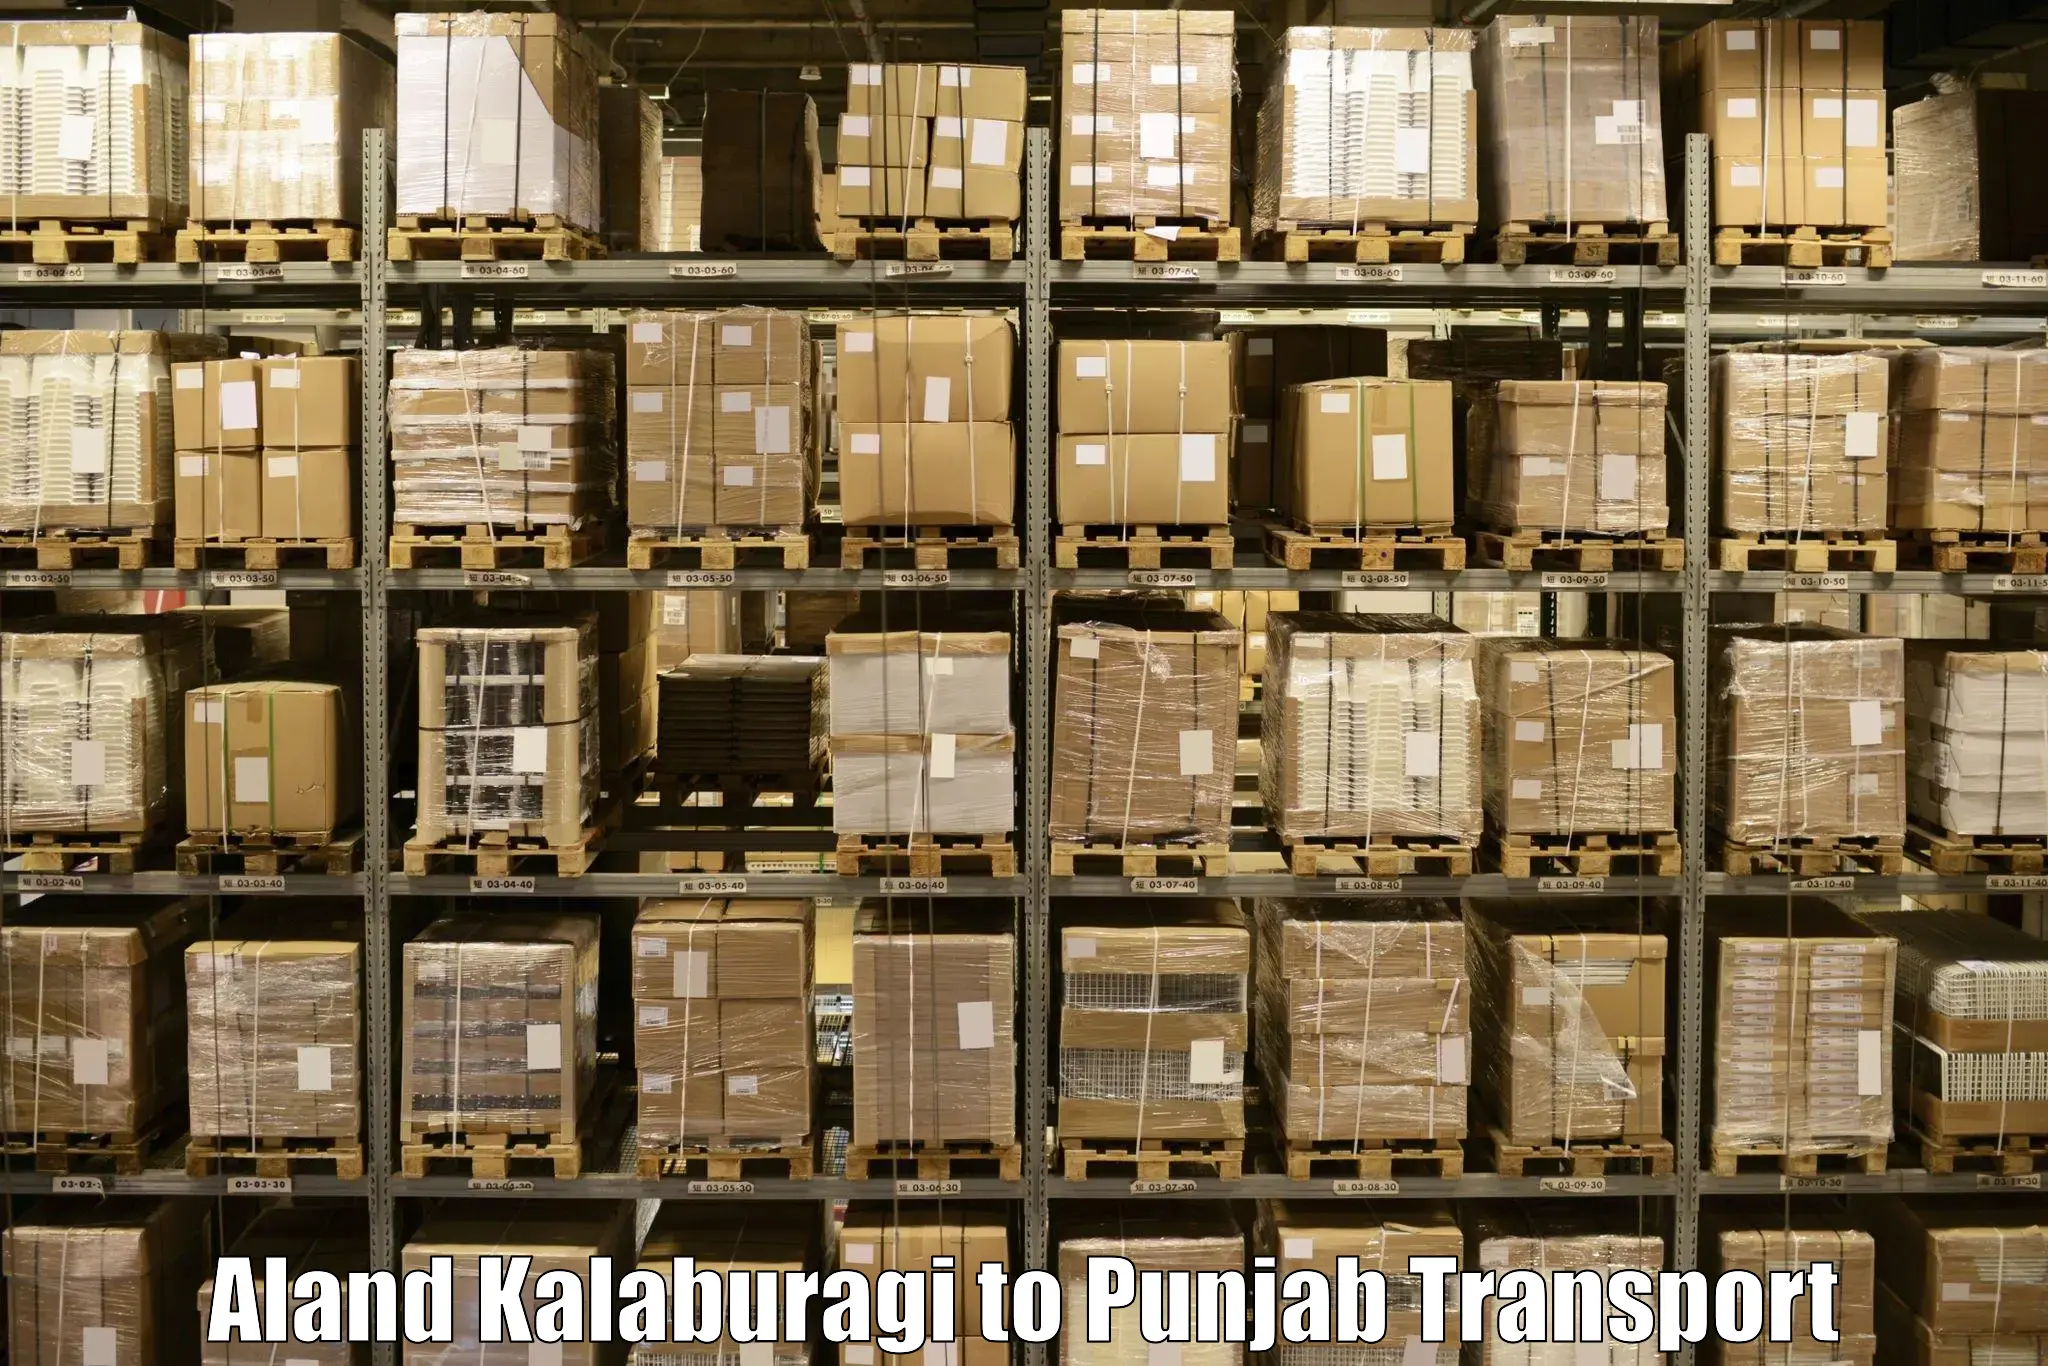 Two wheeler transport services Aland Kalaburagi to Rupnagar